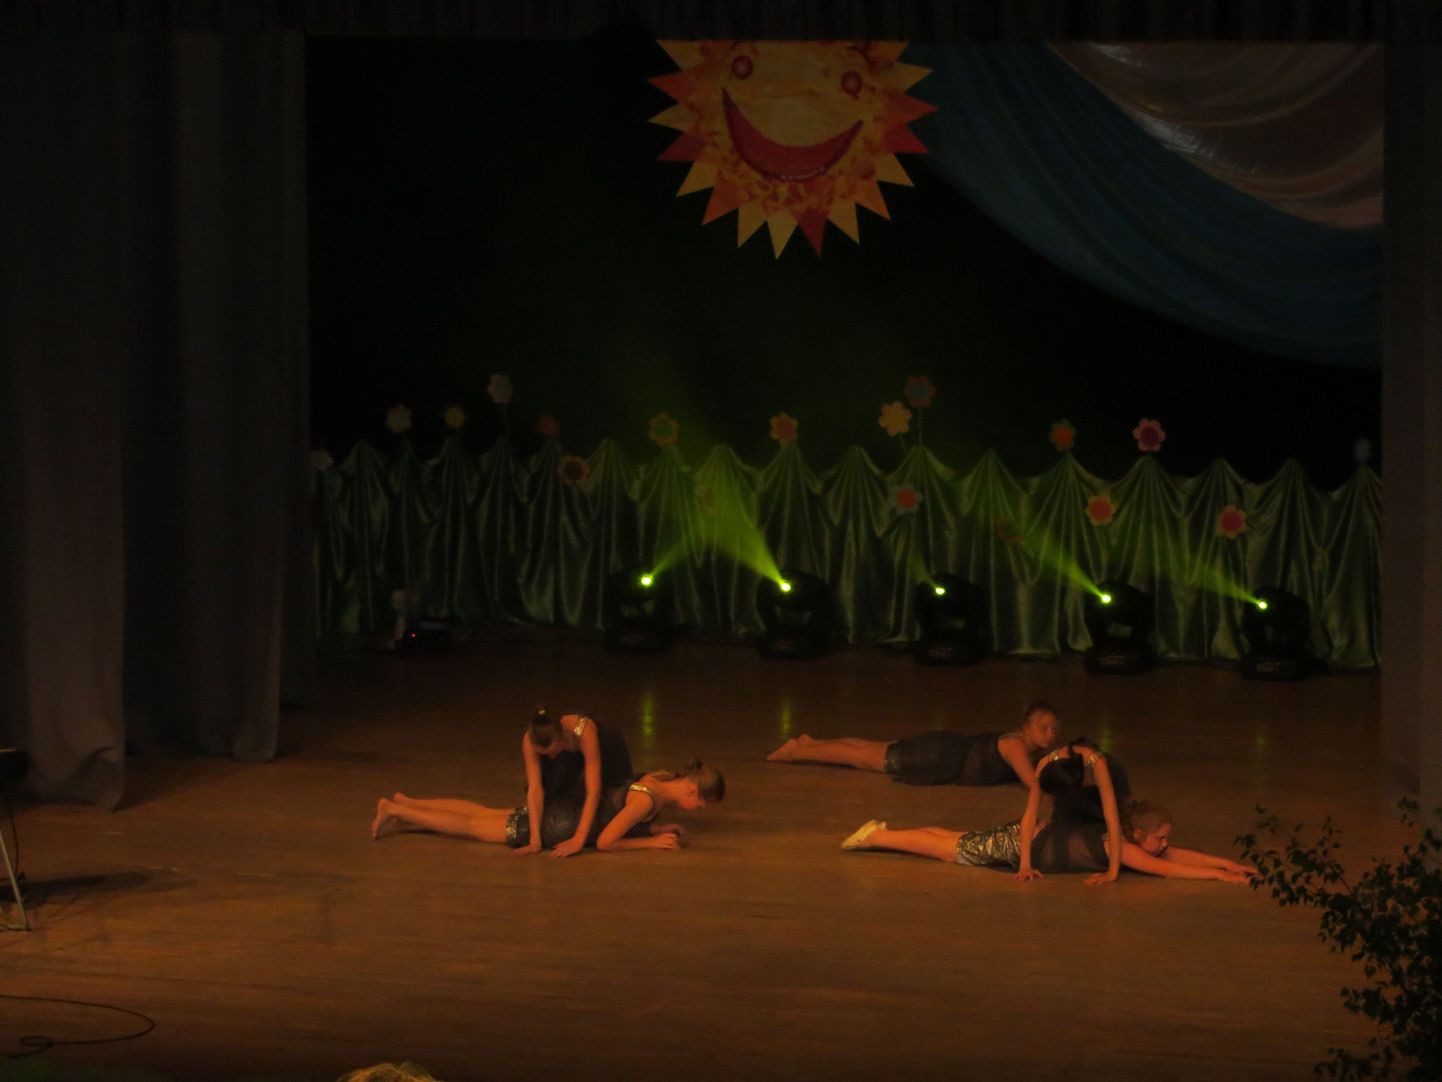 Max-Mary pidupäevakontserdil esinesid kõik trupi tantsurühmad. Akrobaatilist meisterlikkust näitas tütarlaste tantsutrupp.